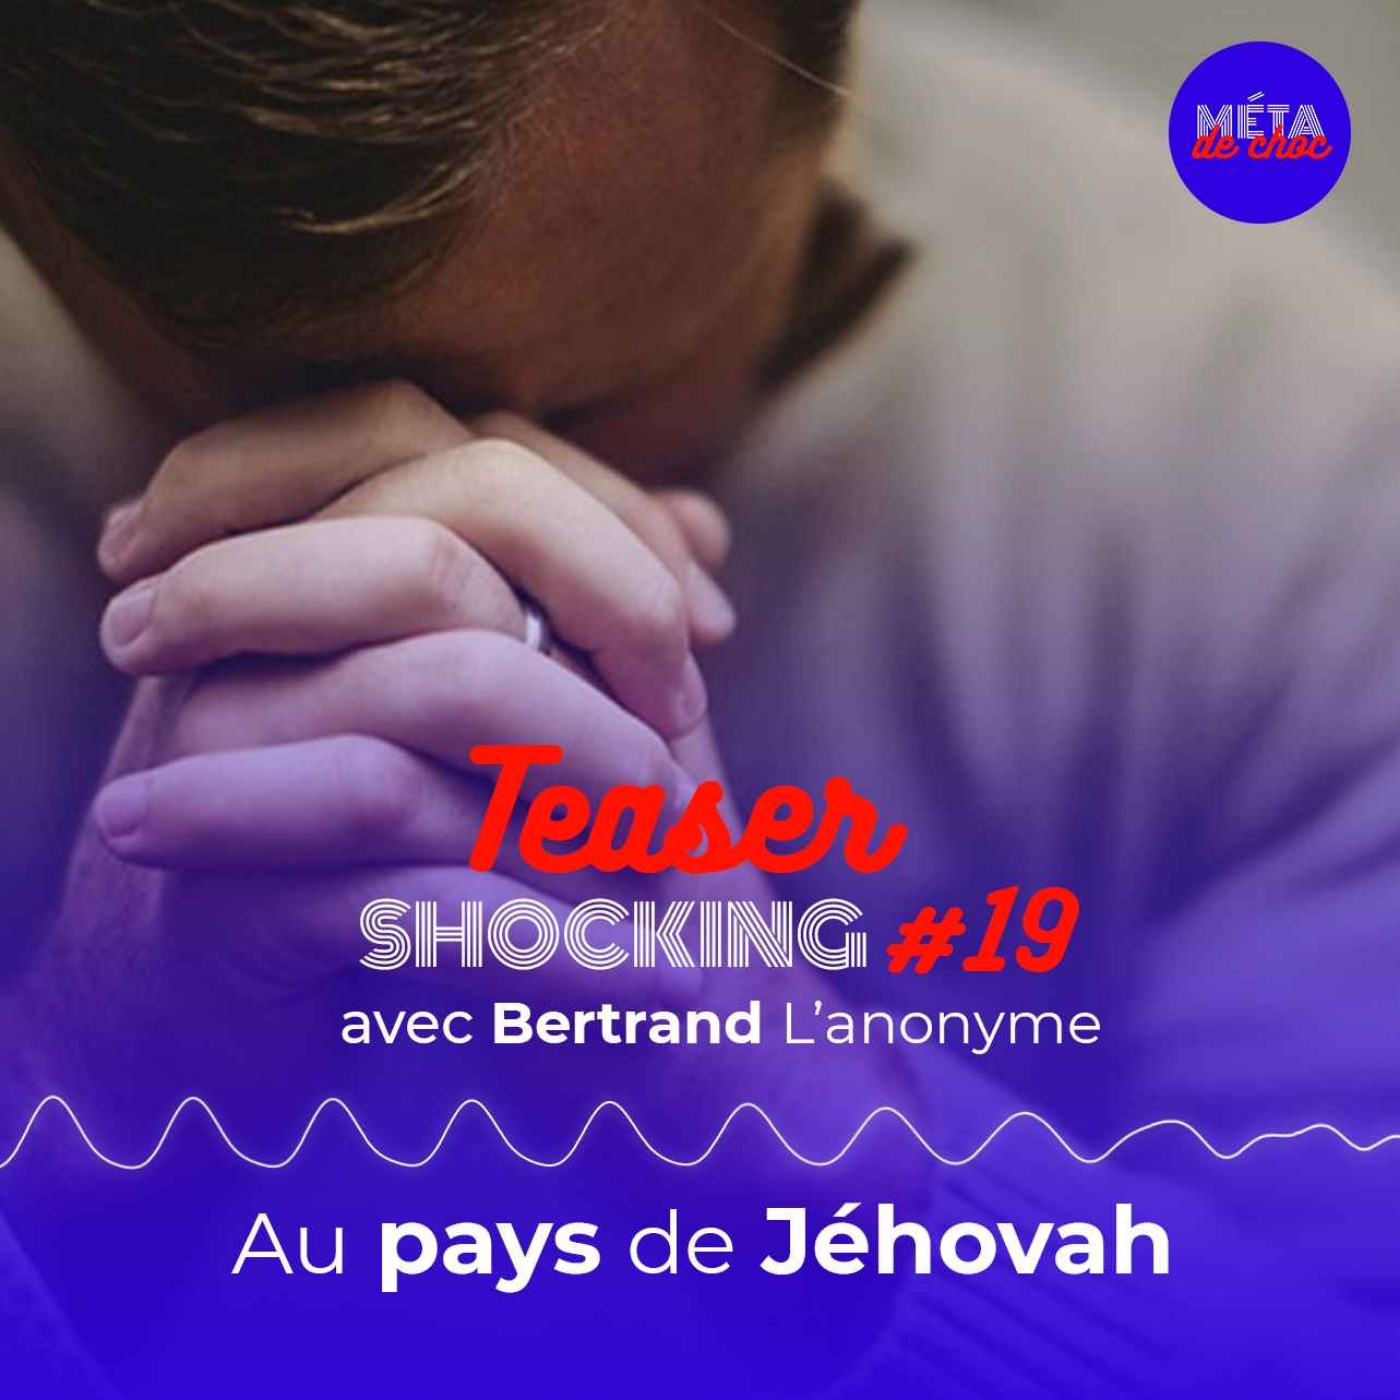 Au pays de Jéhovah (Teaser), avec Bertrand L'anonyme — SHOCKING #19